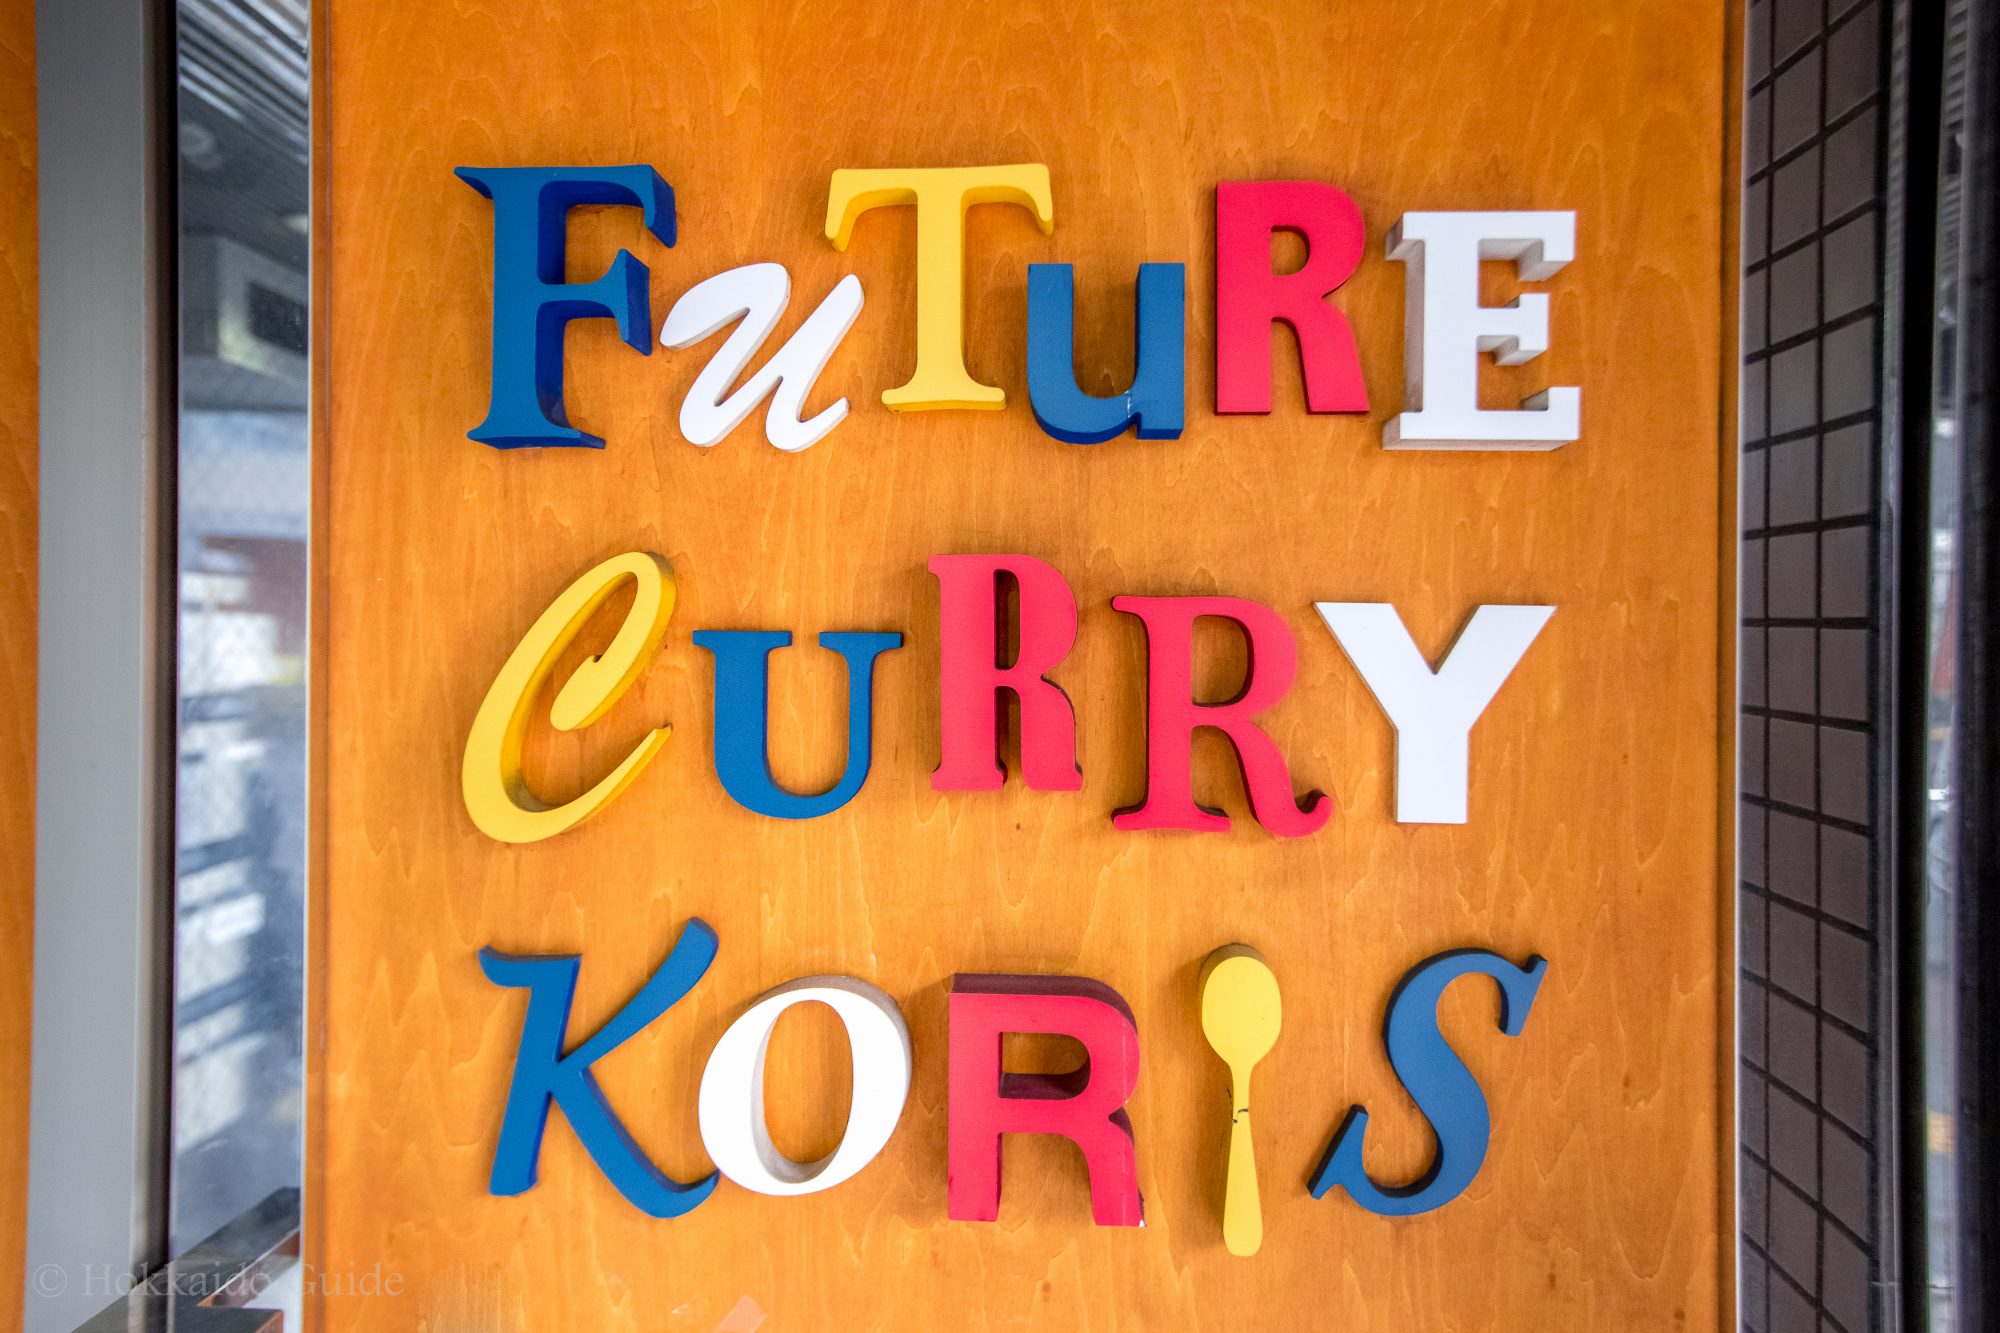 Future Curry Koris front door